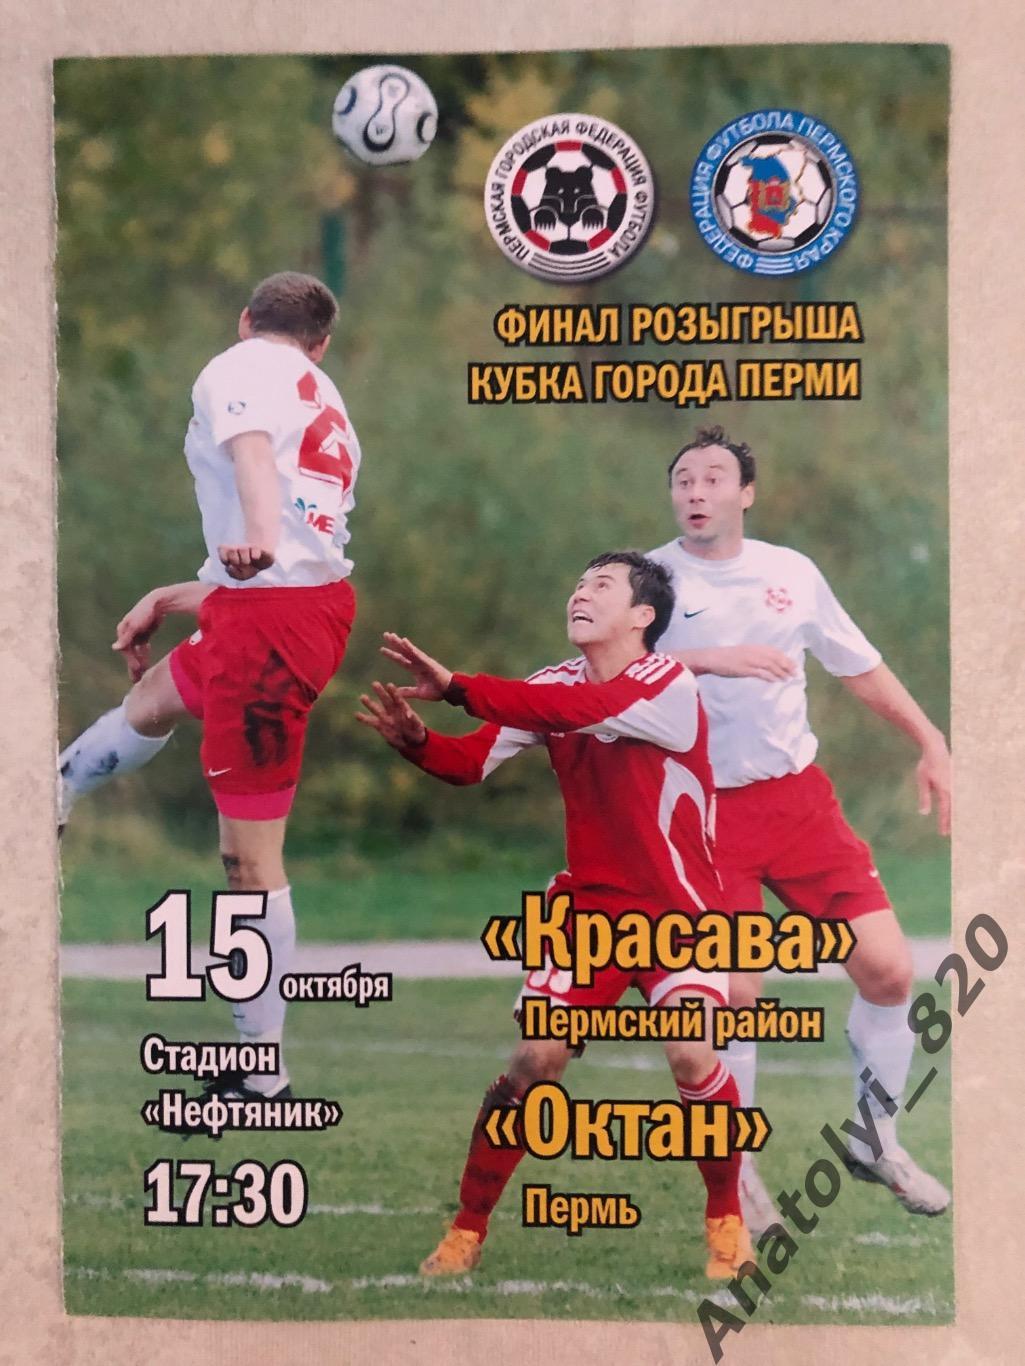 Октан Пермь - Красава, финал кубка города Перми 2008 год